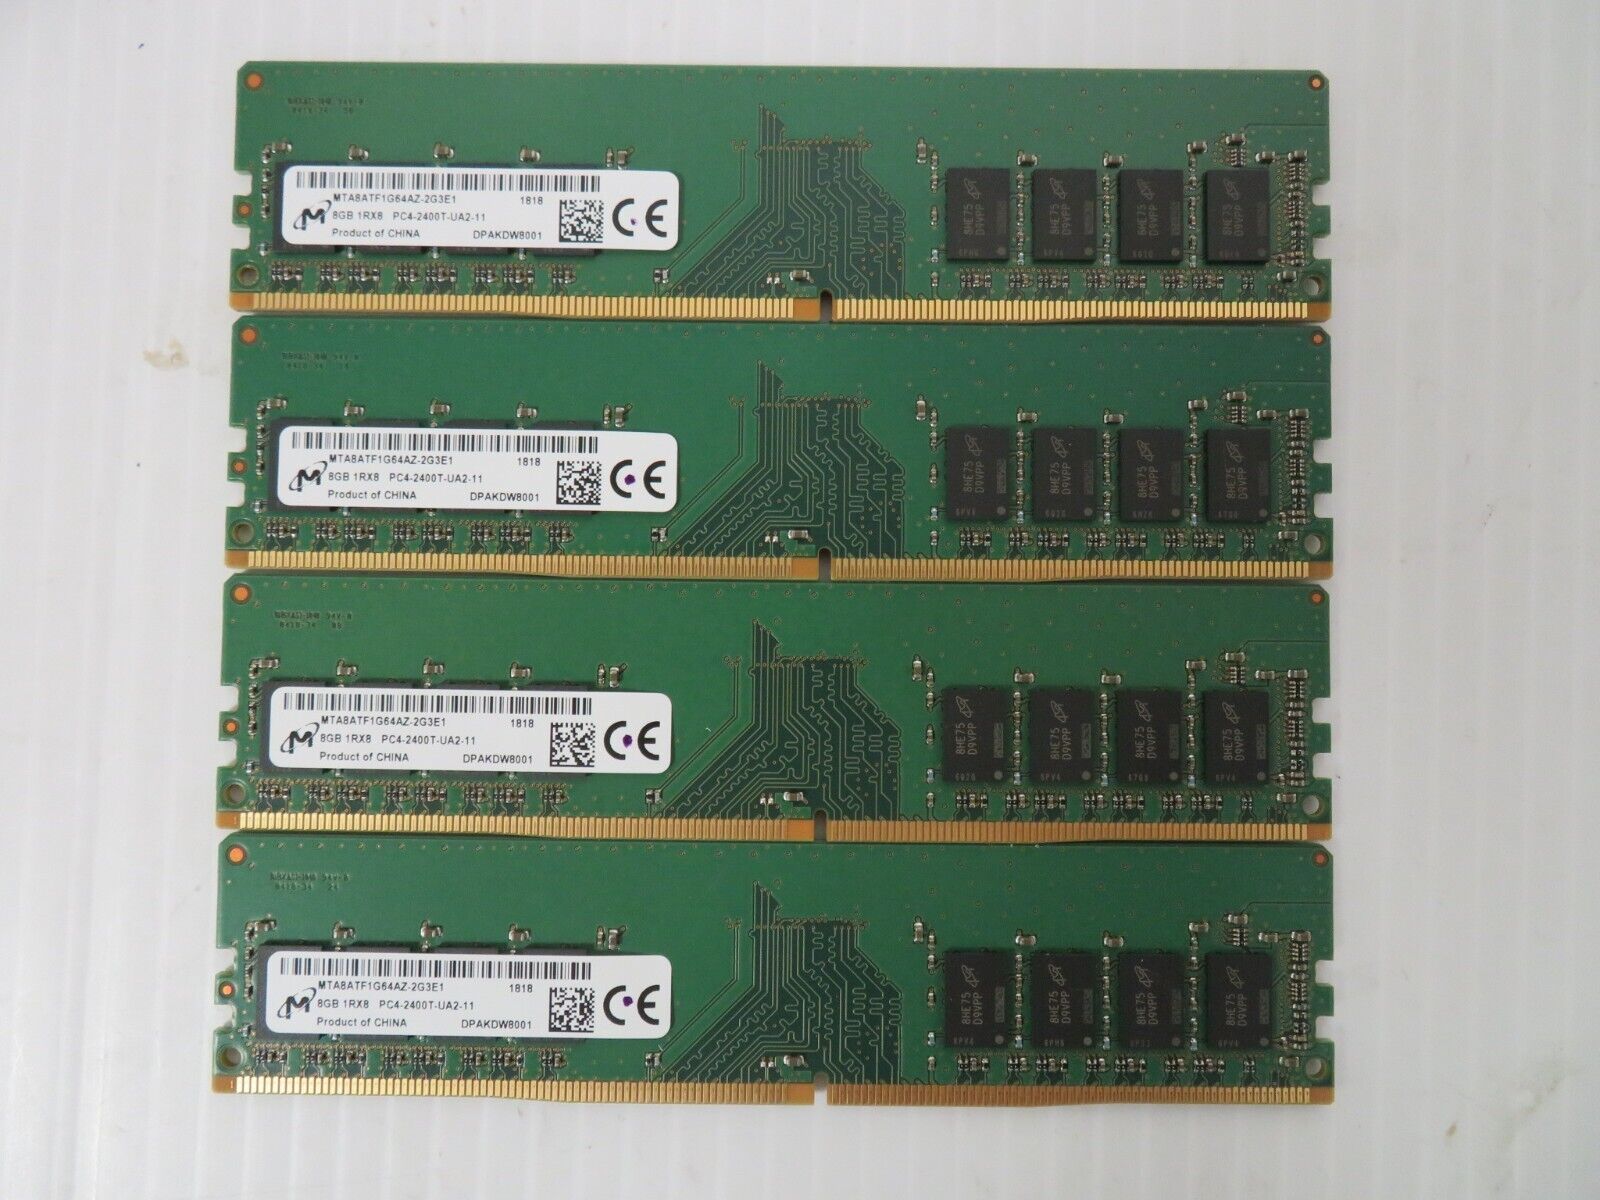 Micron 16GB (2x8GB) PC4-2400T DDR4 2400Mhz Memory RAM Kit MTA8ATF1G64AZ-2G3E1